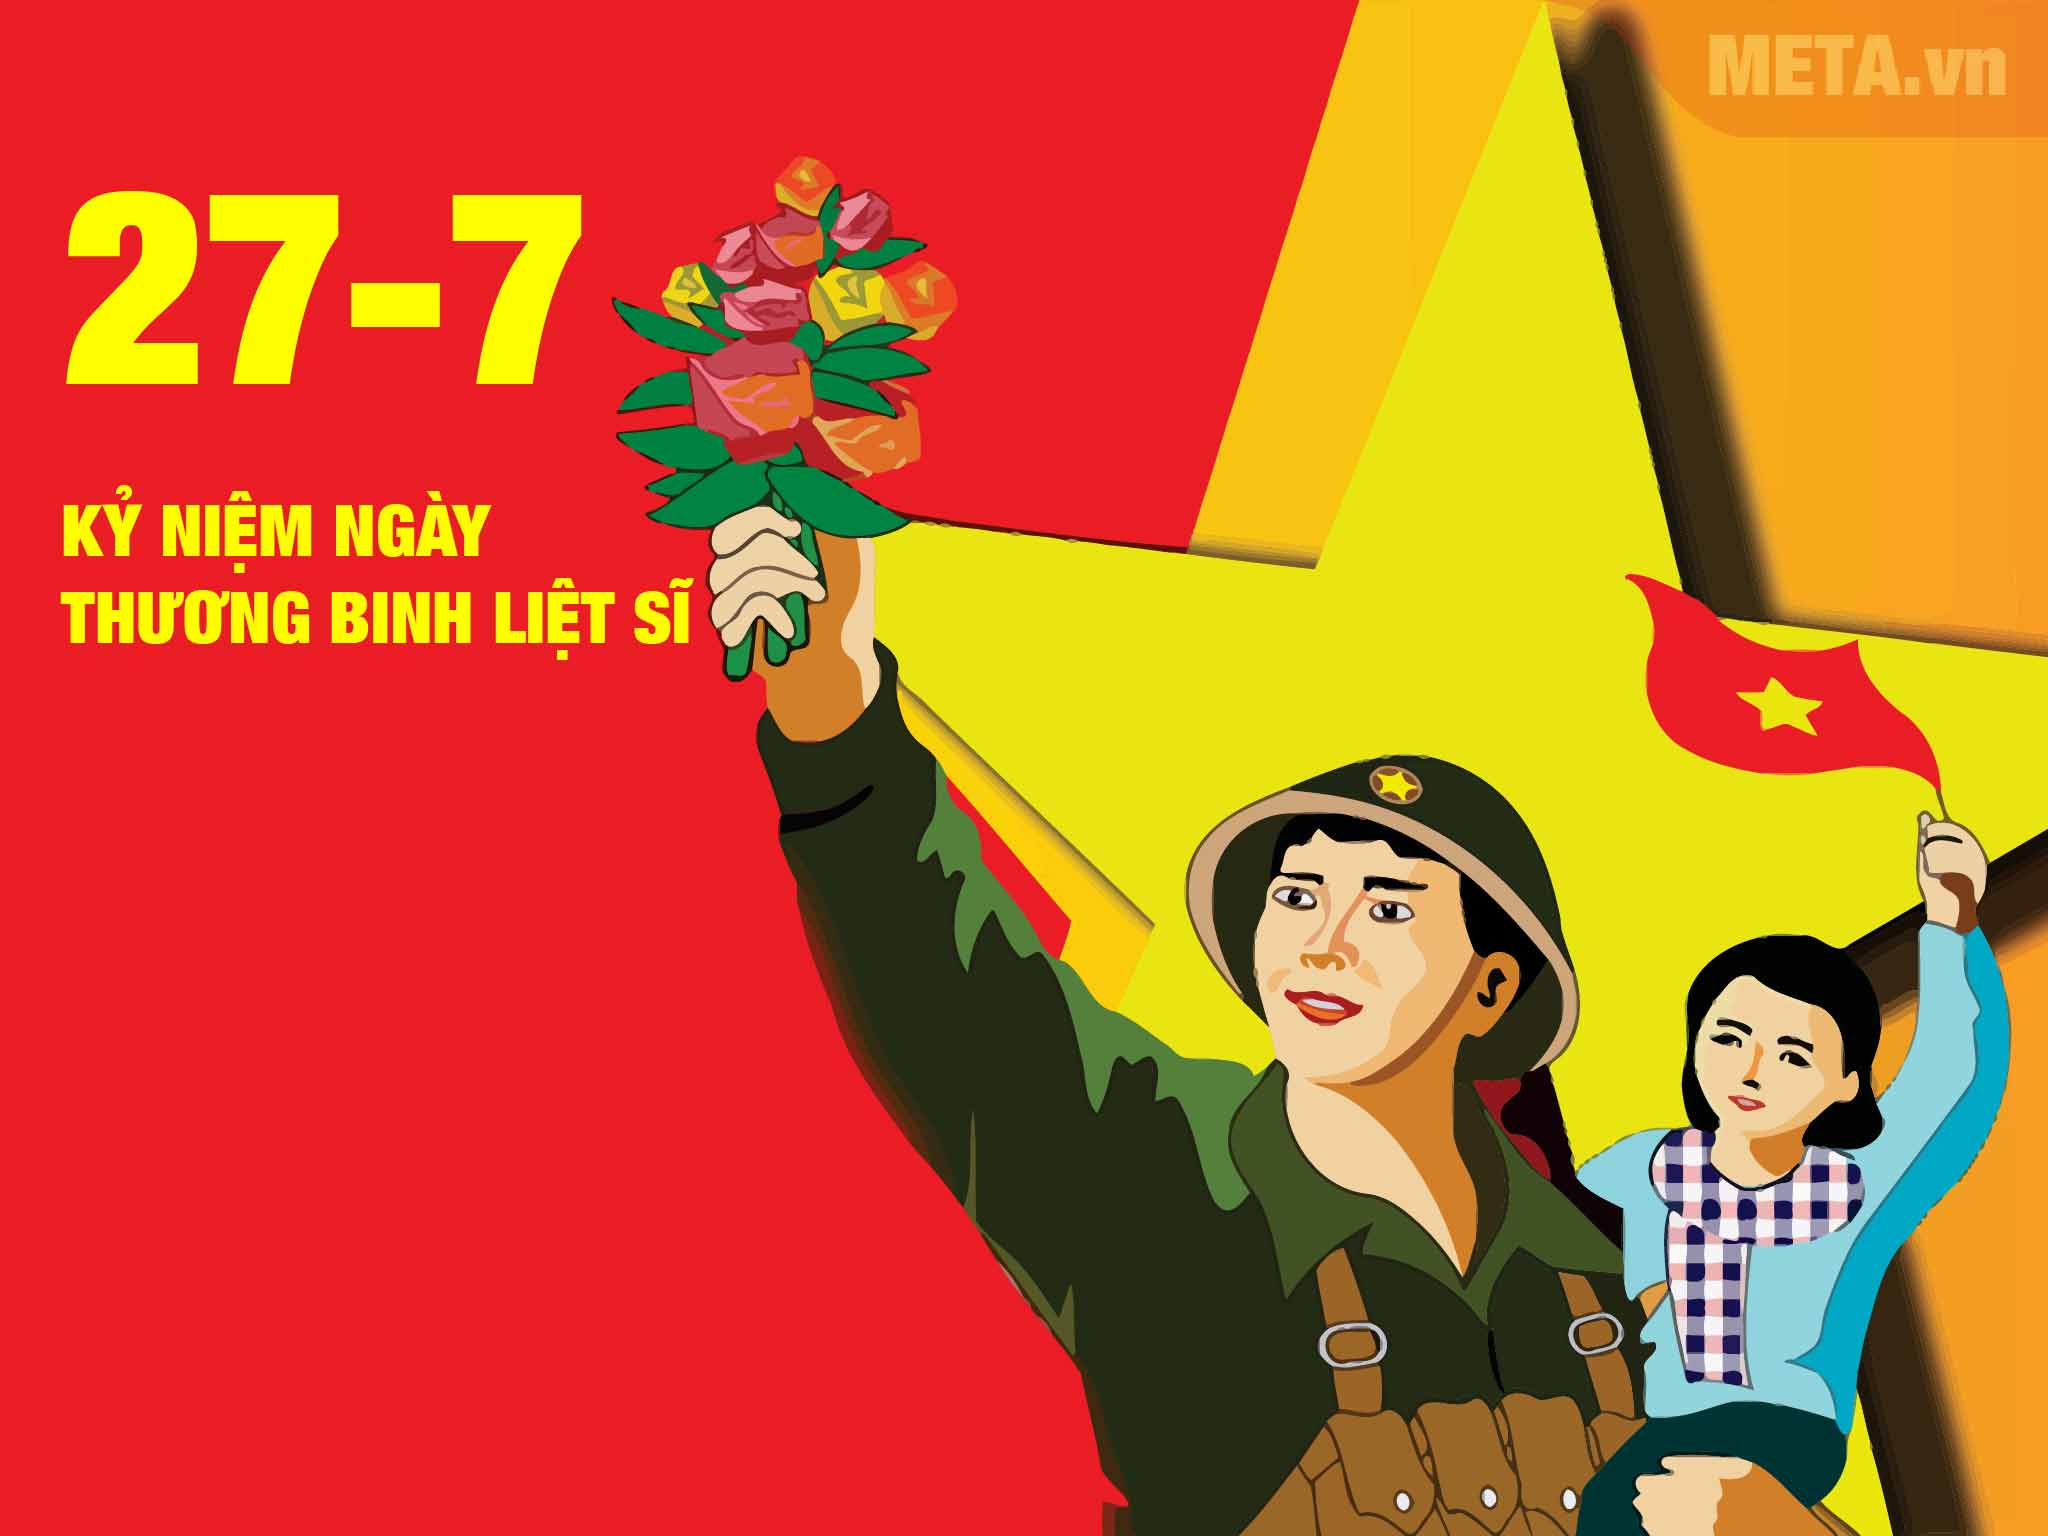 Ngày 27/7 không chỉ là một ngày đặc biệt, mà còn mang trong mình ý nghĩa đặc biệt. Đây là thời điểm để chúc tụng sự kiện lịch sử - Cuộc cách mạng Tháng Tám thành công - và những nỗ lực không ngừng của toàn dân Việt Nam trong công cuộc xây dựng đất nước ngày càng phát triển, vững mạnh.